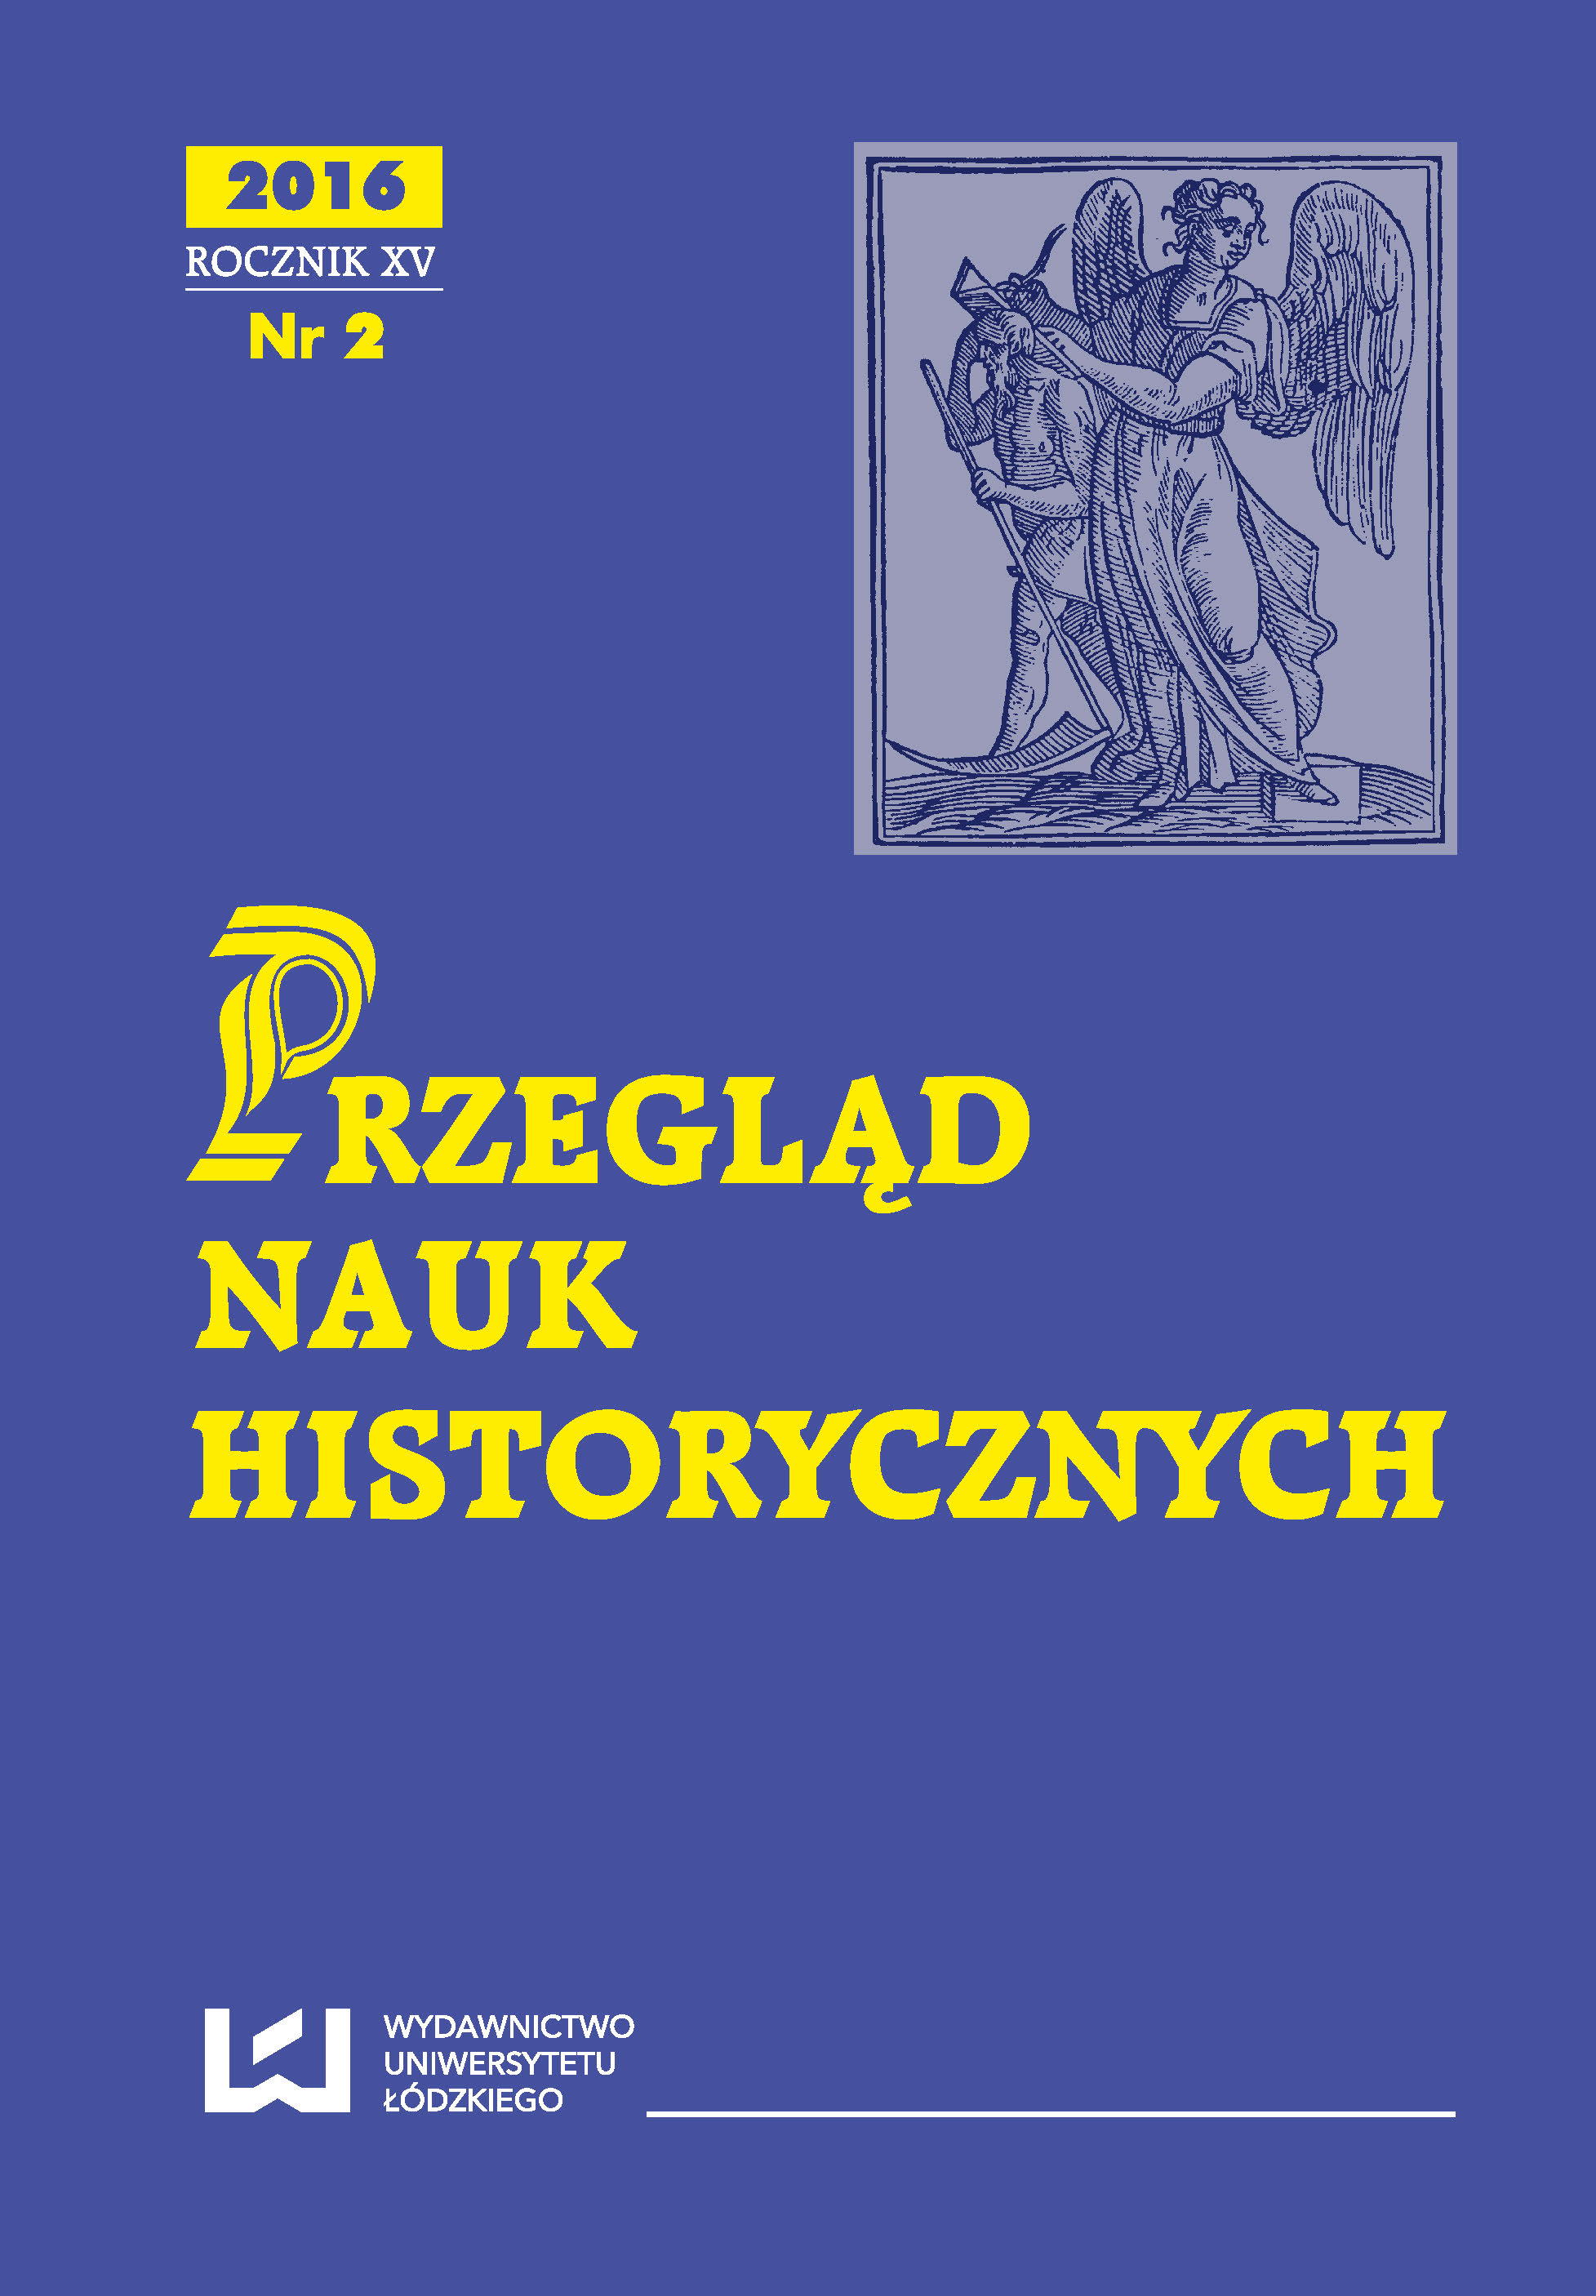 Sława, chwała i plotka Władysław Warneńczyk jako król Węgier